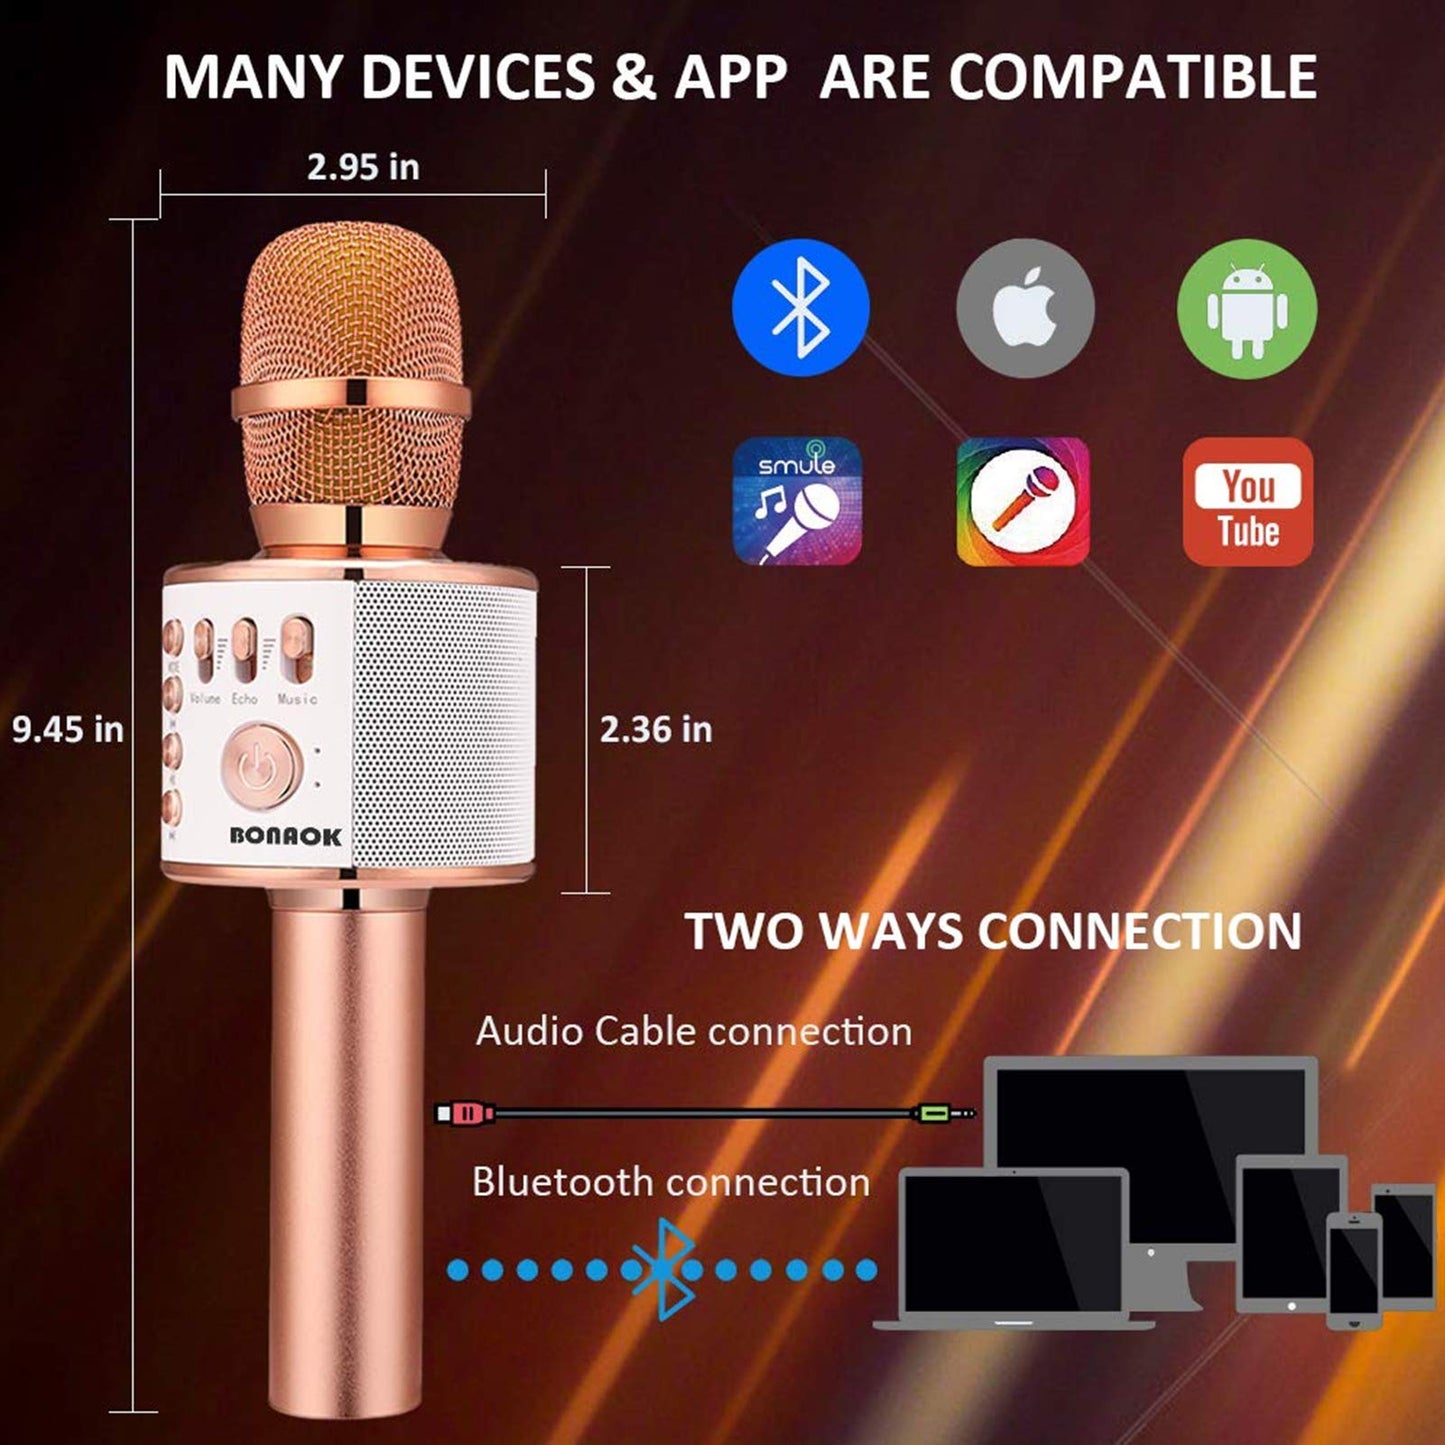 BONAOK Micrófono inalámbrico de karaoke Bluetooth, altavoz portátil 3 en 1 para todos los teléfonos inteligentes, regalos para niñas, niños, adultos de todas las edades Q37 (oro rosa)